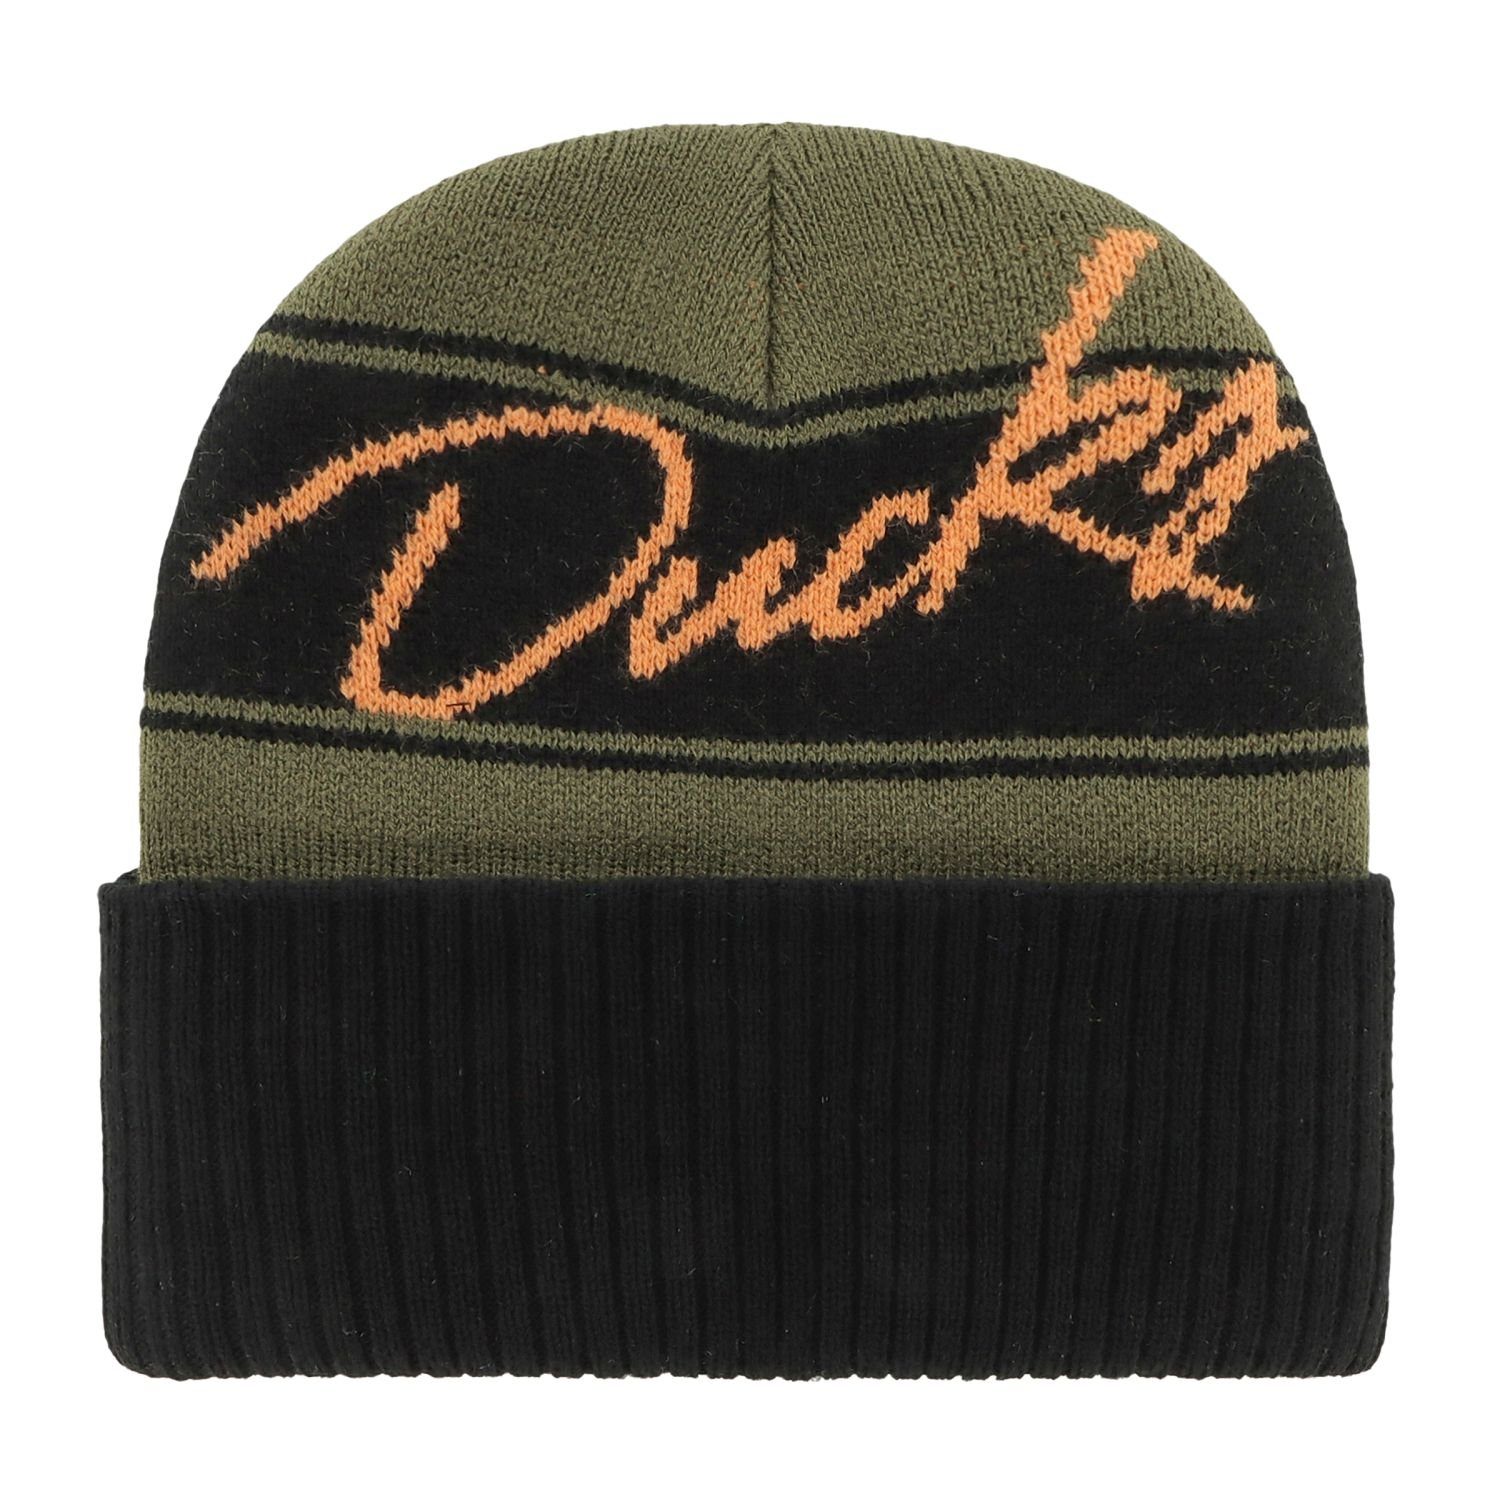 Anaheim '47 Brand Ducks Fleecemütze ITALIC Beanie